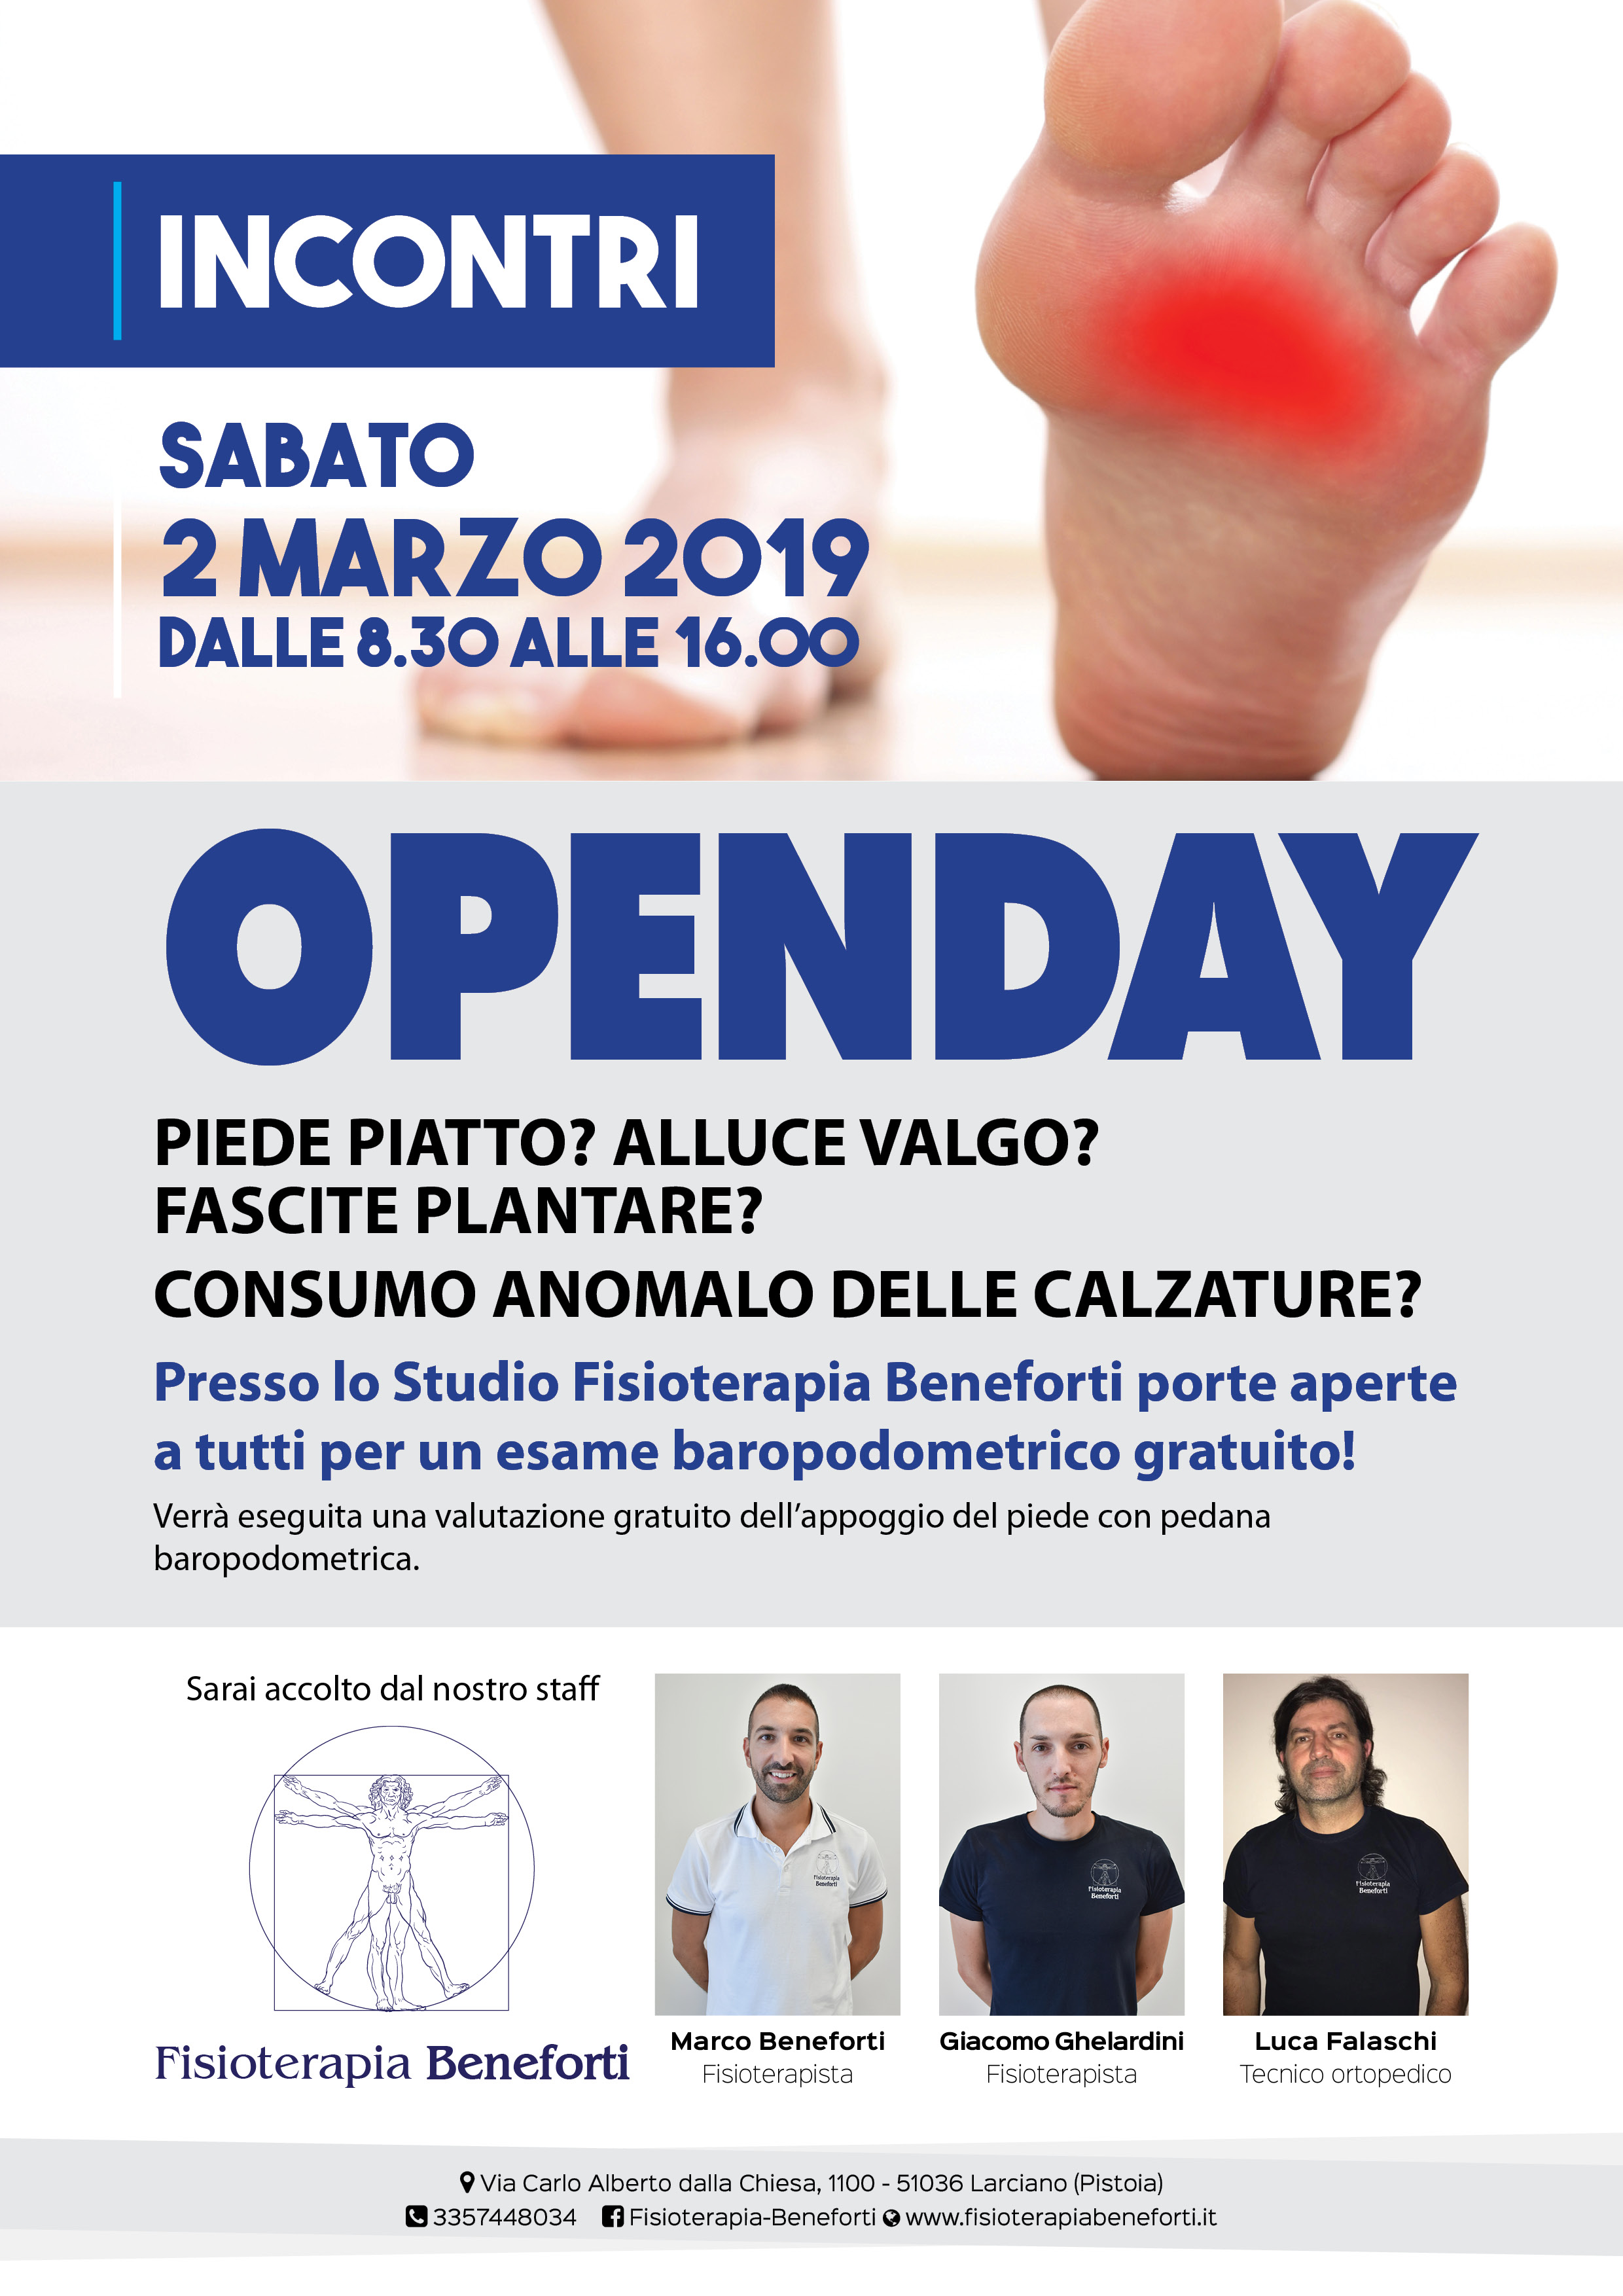 Open Day - Sabato 2 Marzo 2019